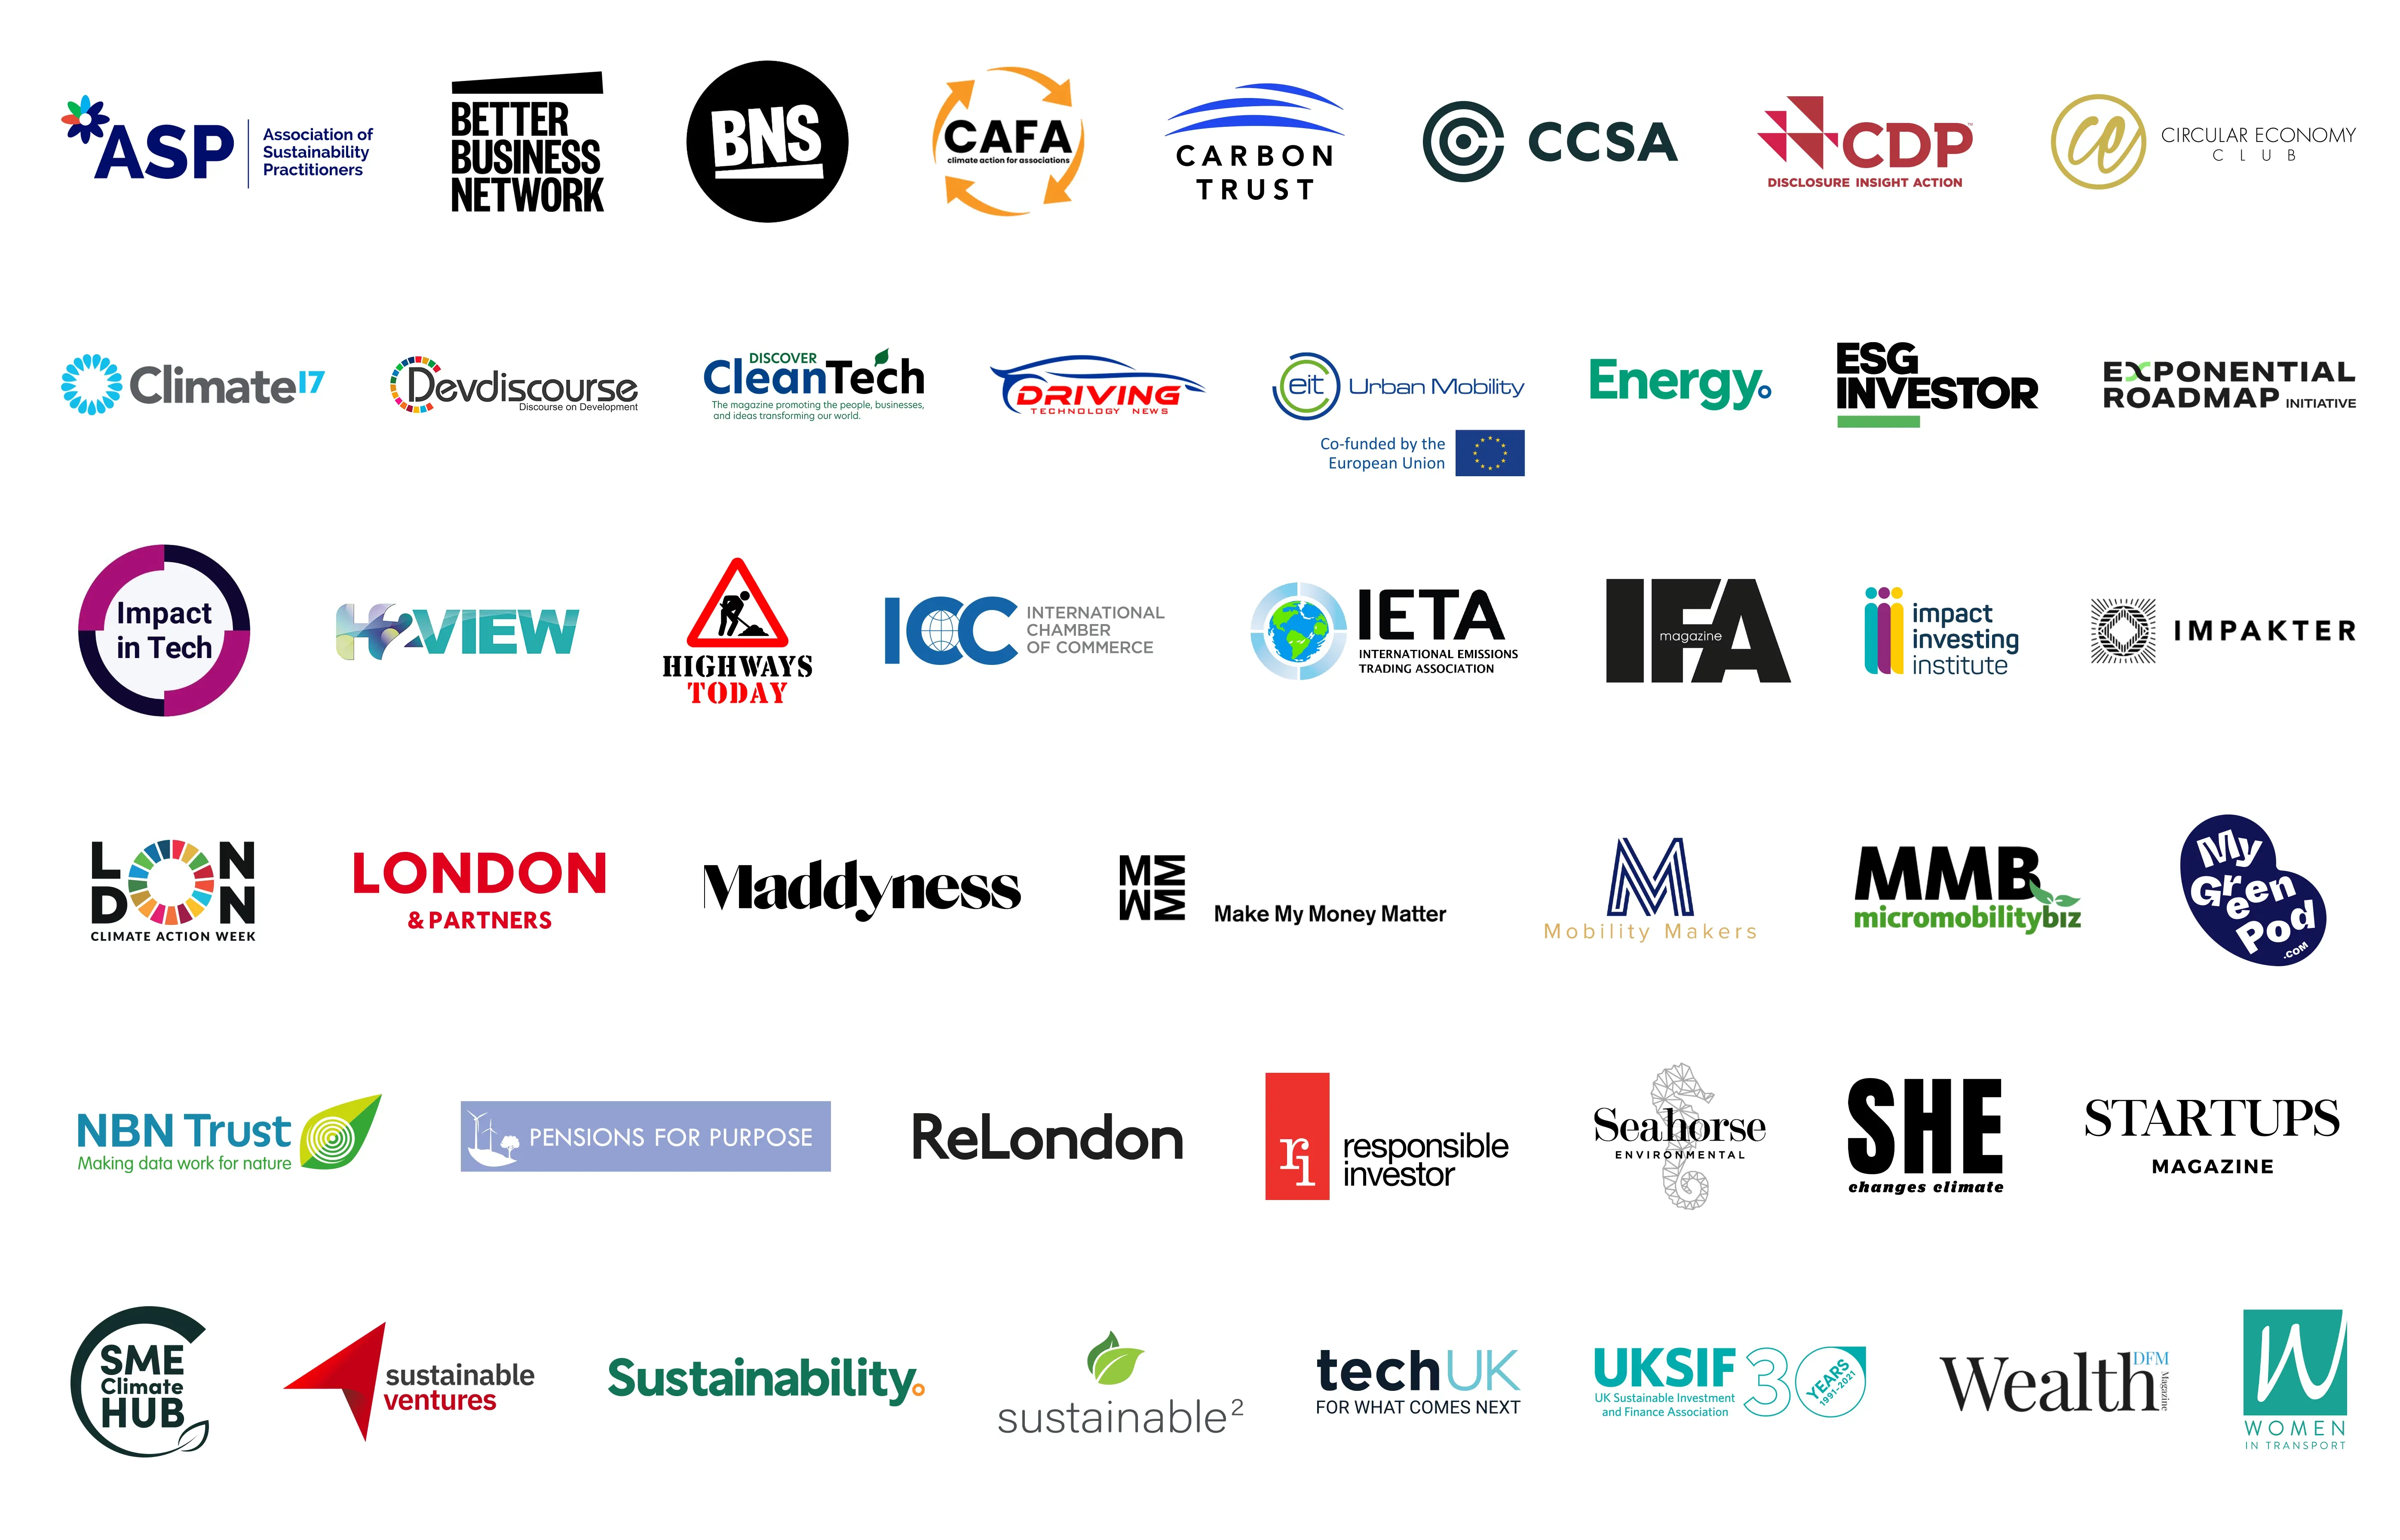 Associations and media partner logos